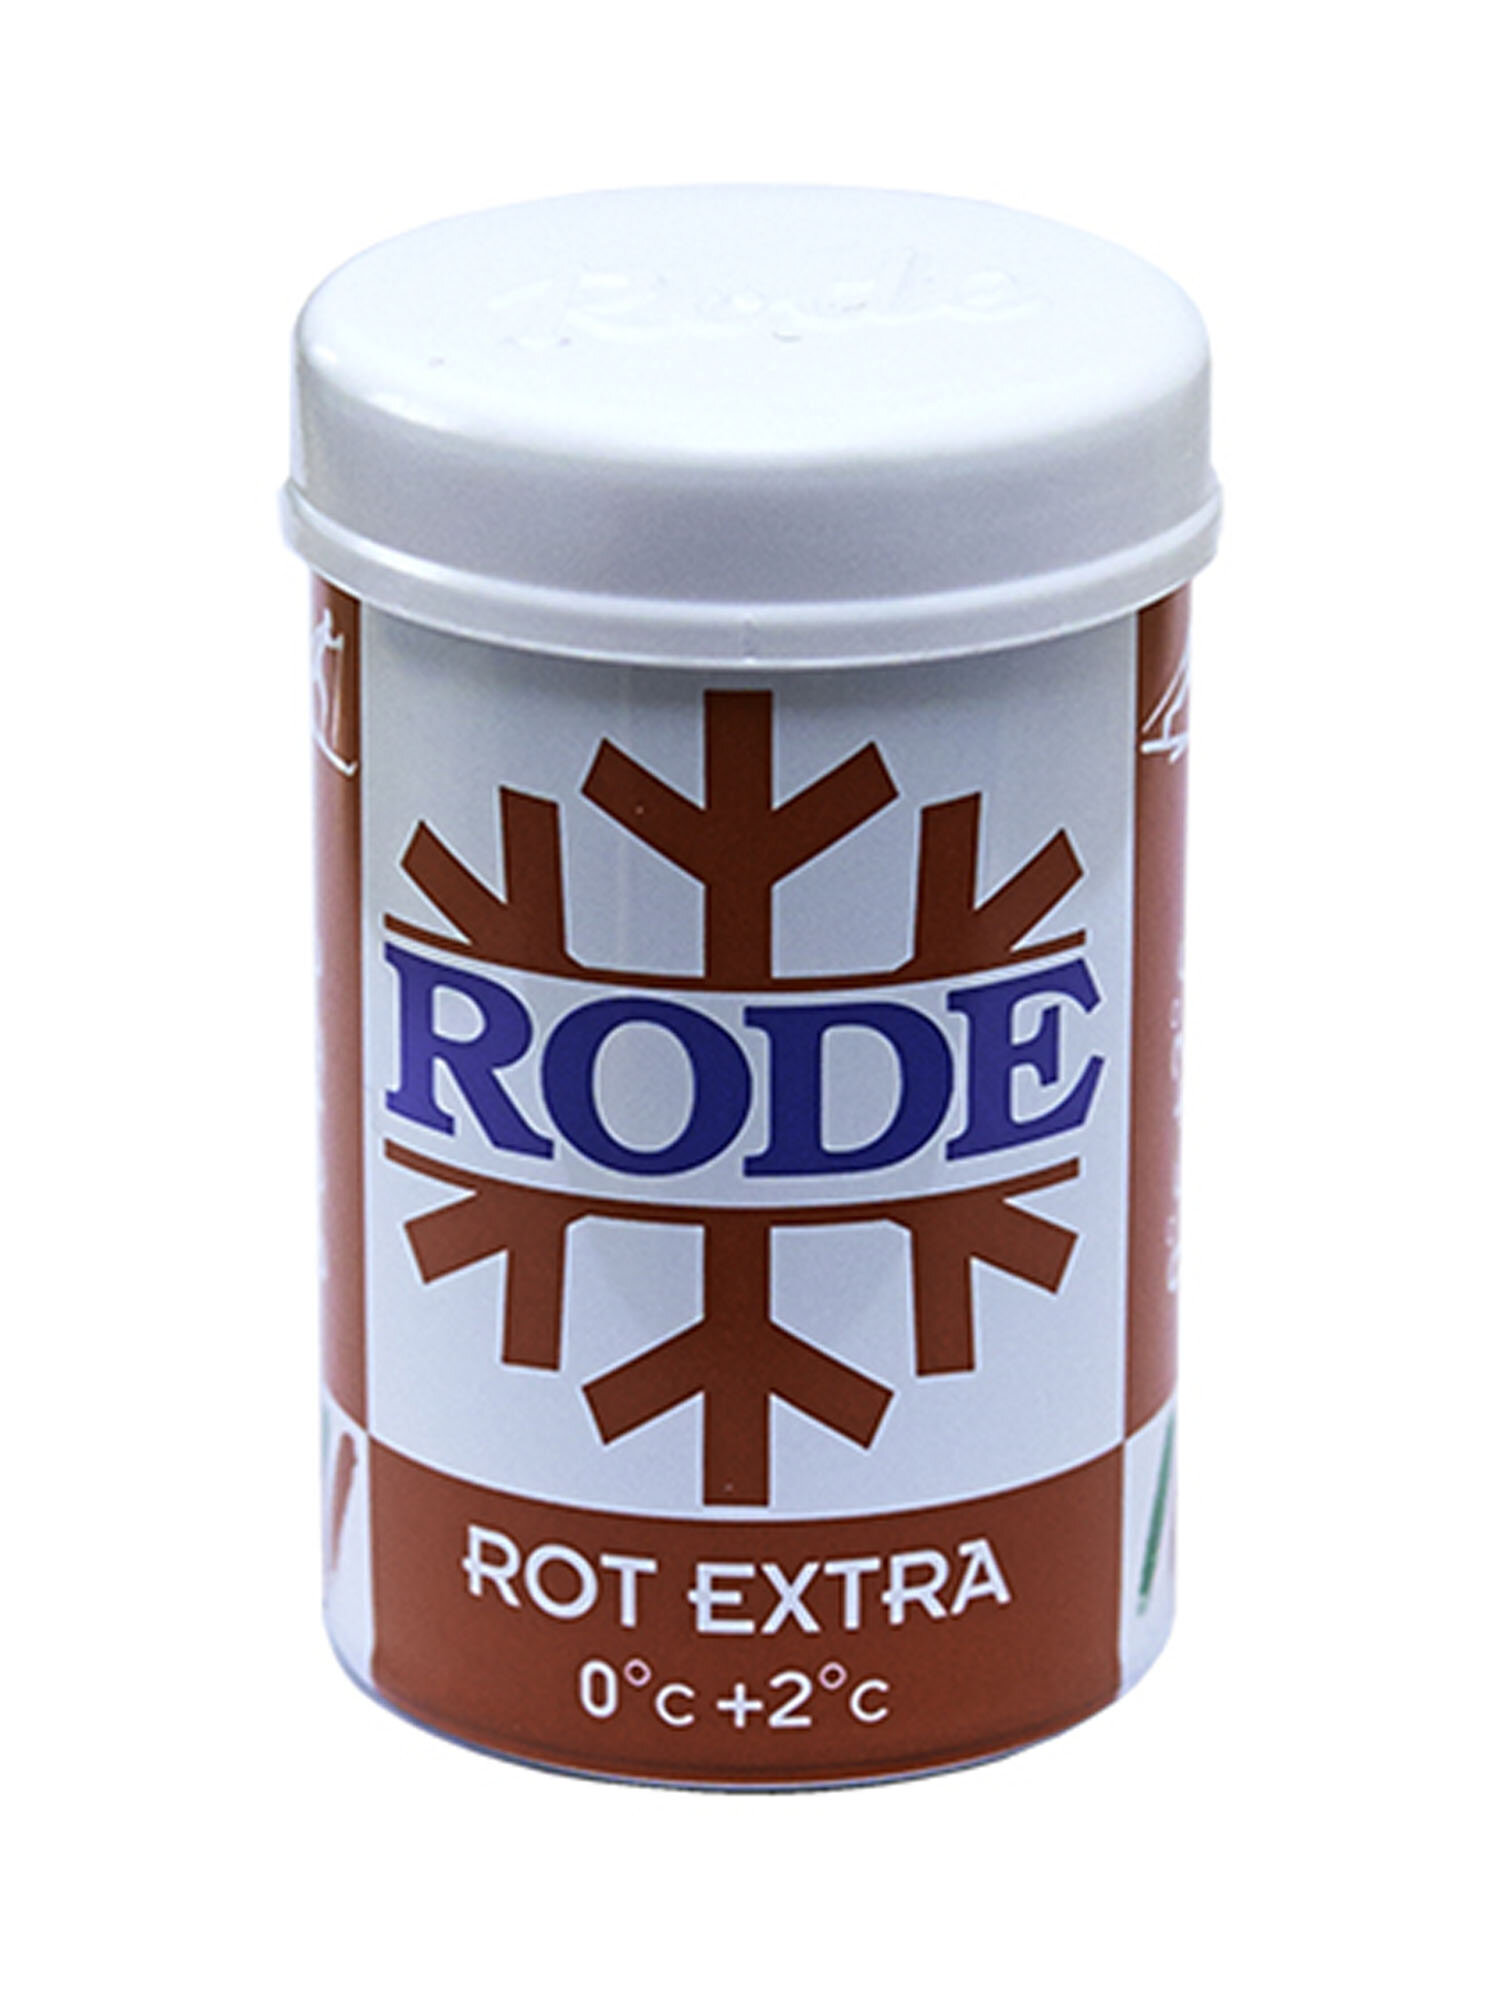 Безфтористая мазь держания твердая RODE Stick Rot Extra 0C°. +2C°